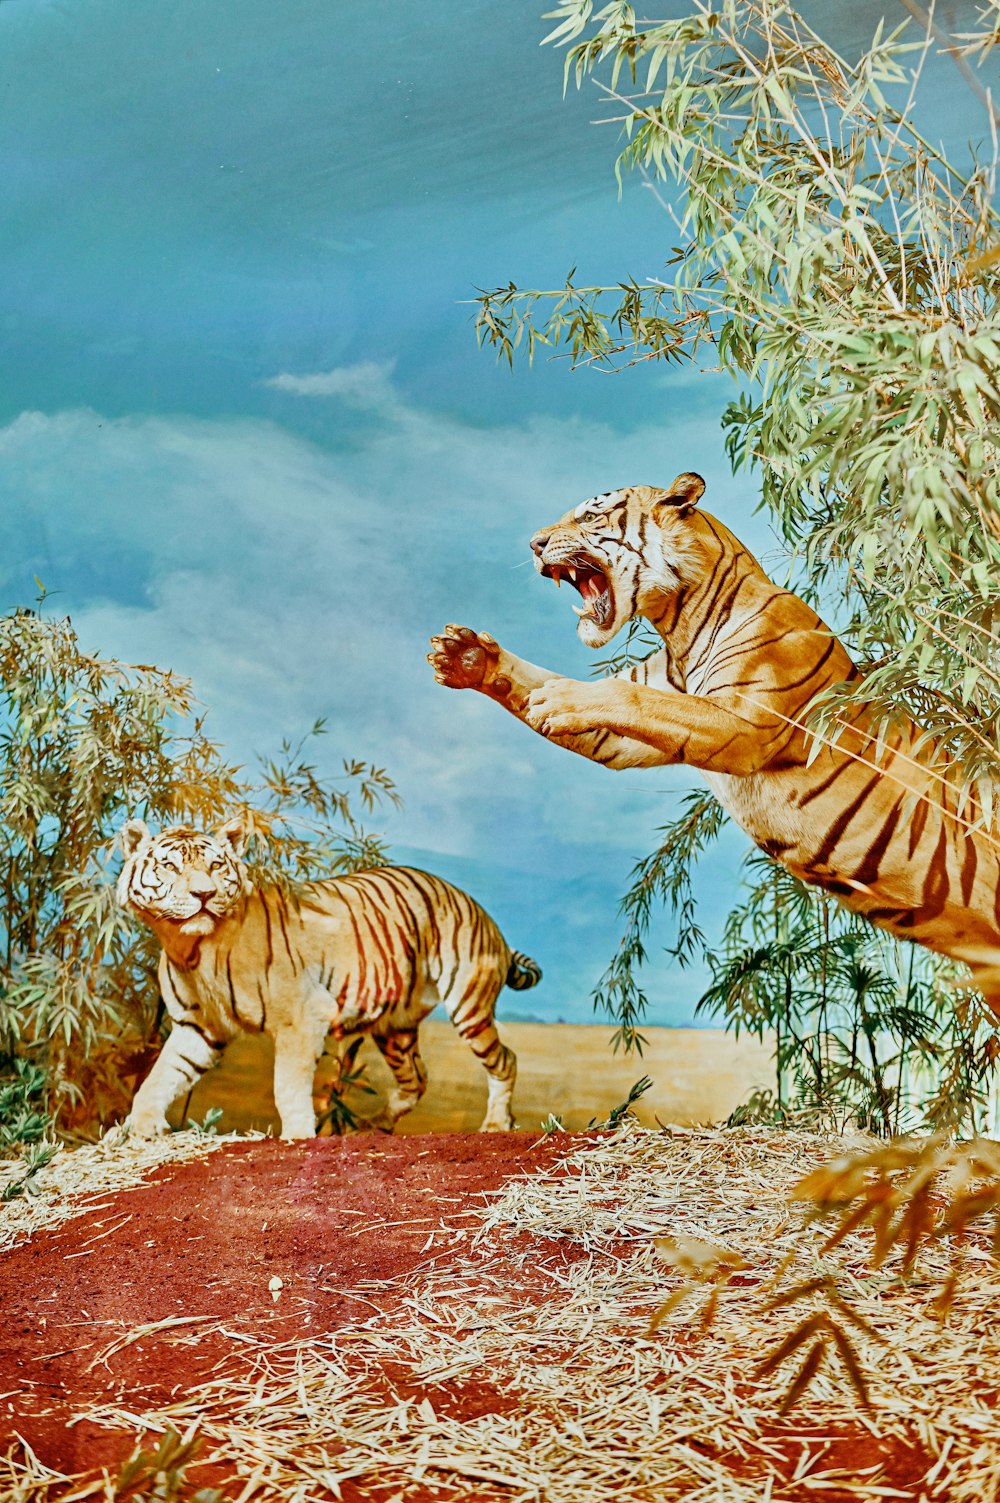 tigre e tigre na pintura do solo coberto de neve